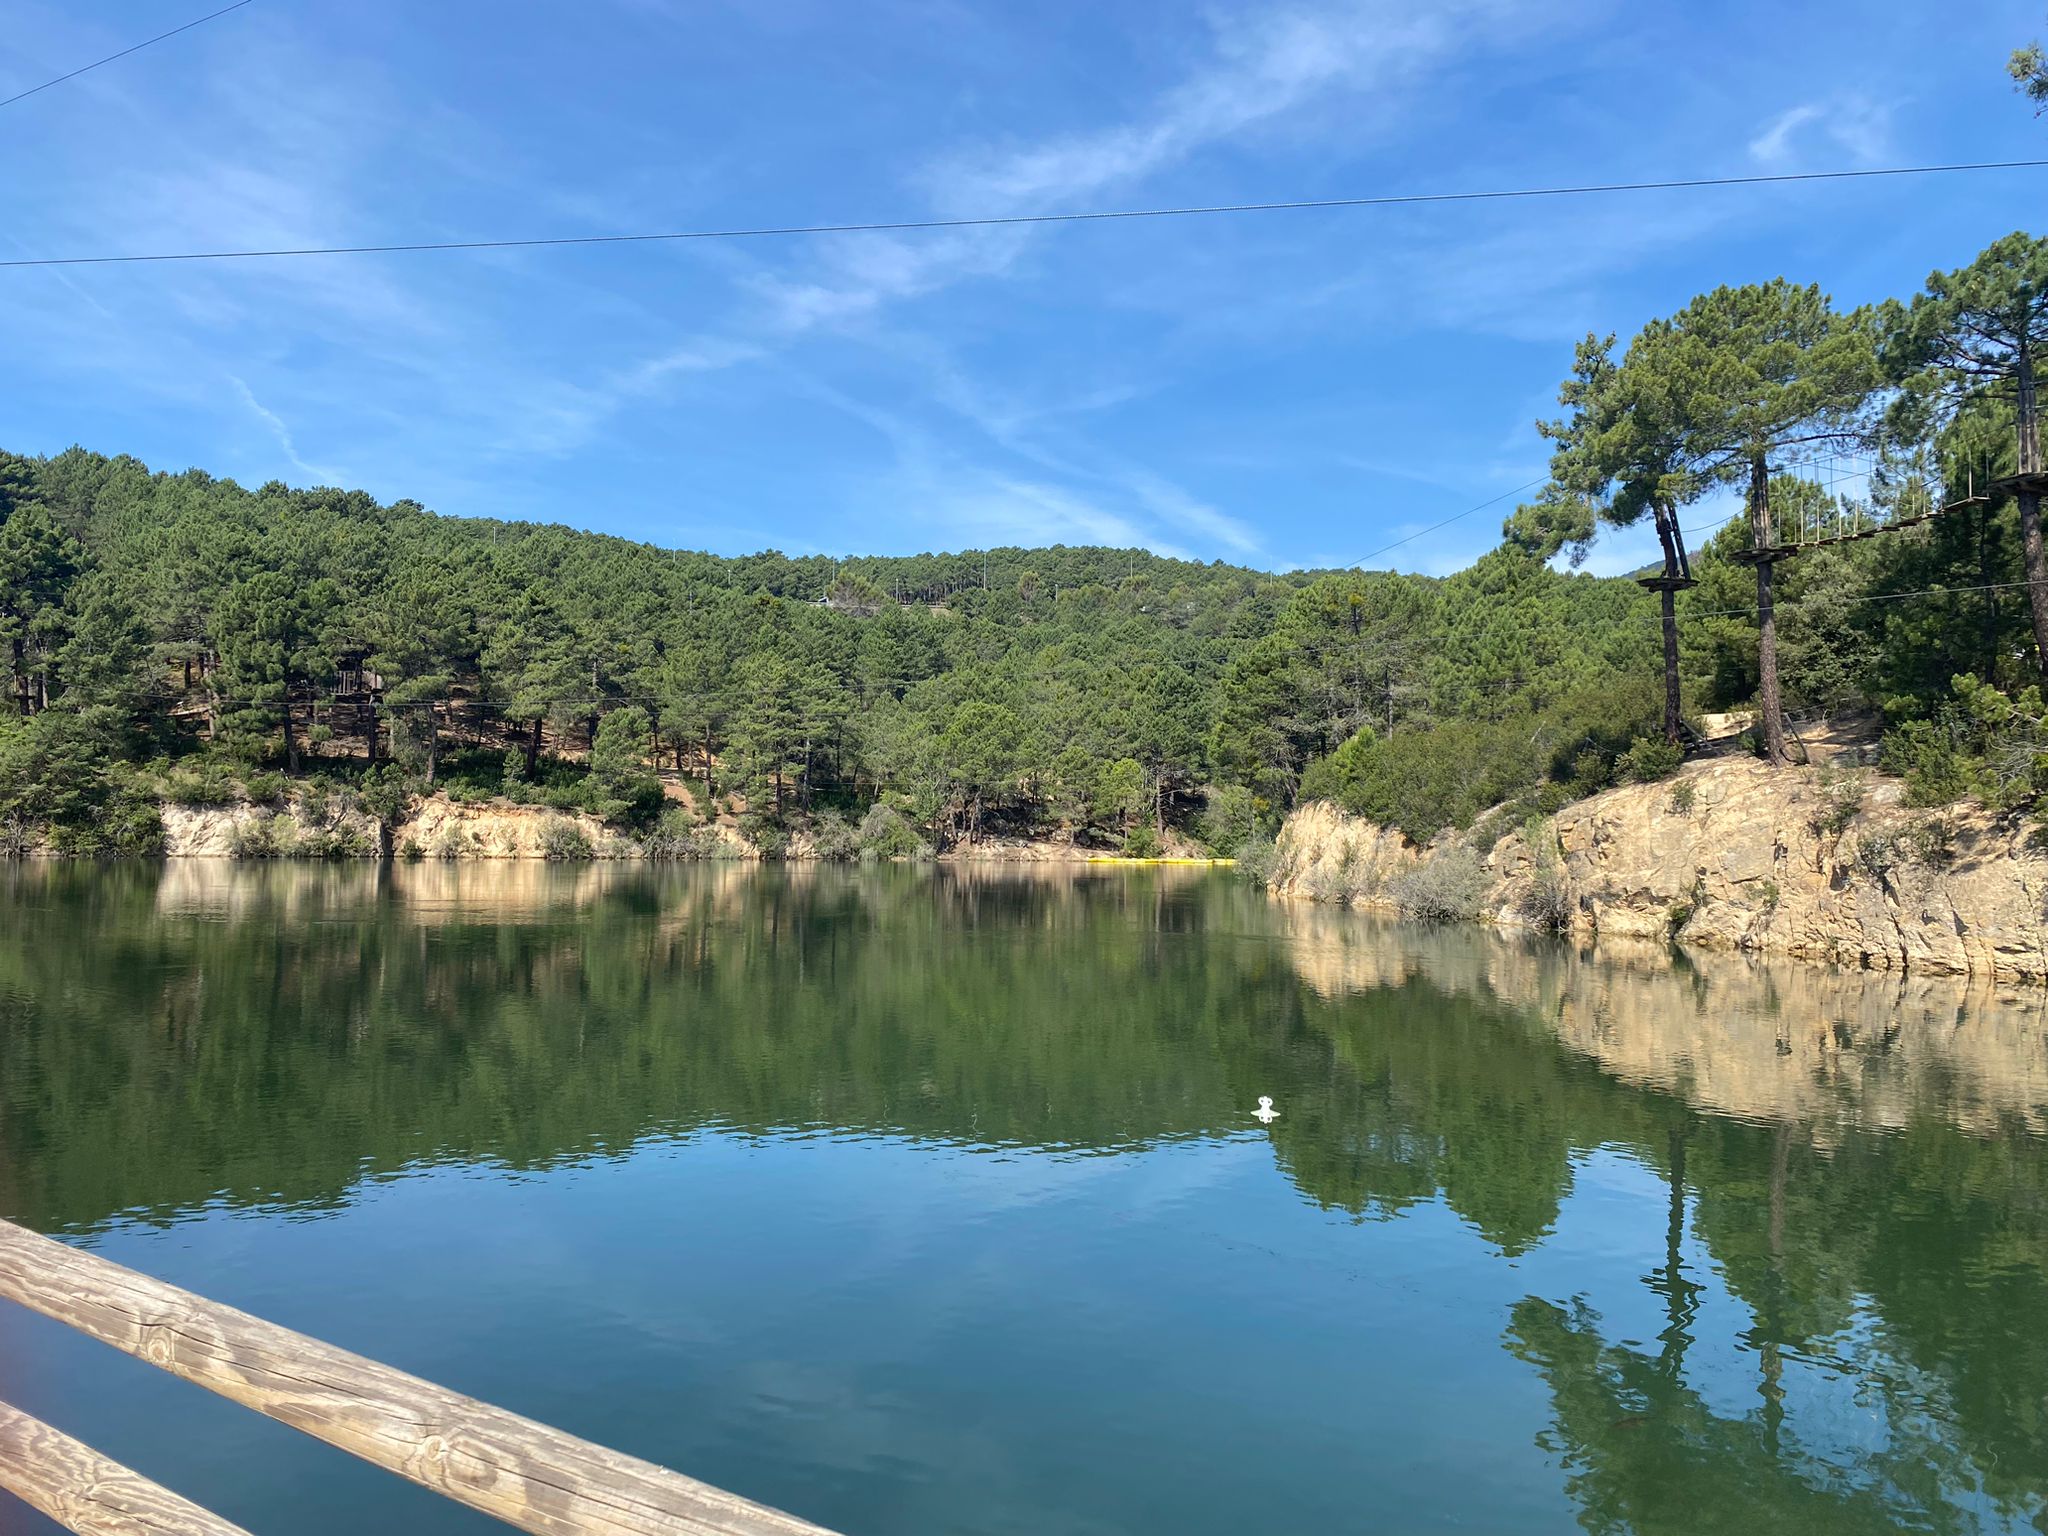 Quizá no lo creáis, pero ¡la tirolina más larga de España entre árboles está en la Sierra de Guadarrama!